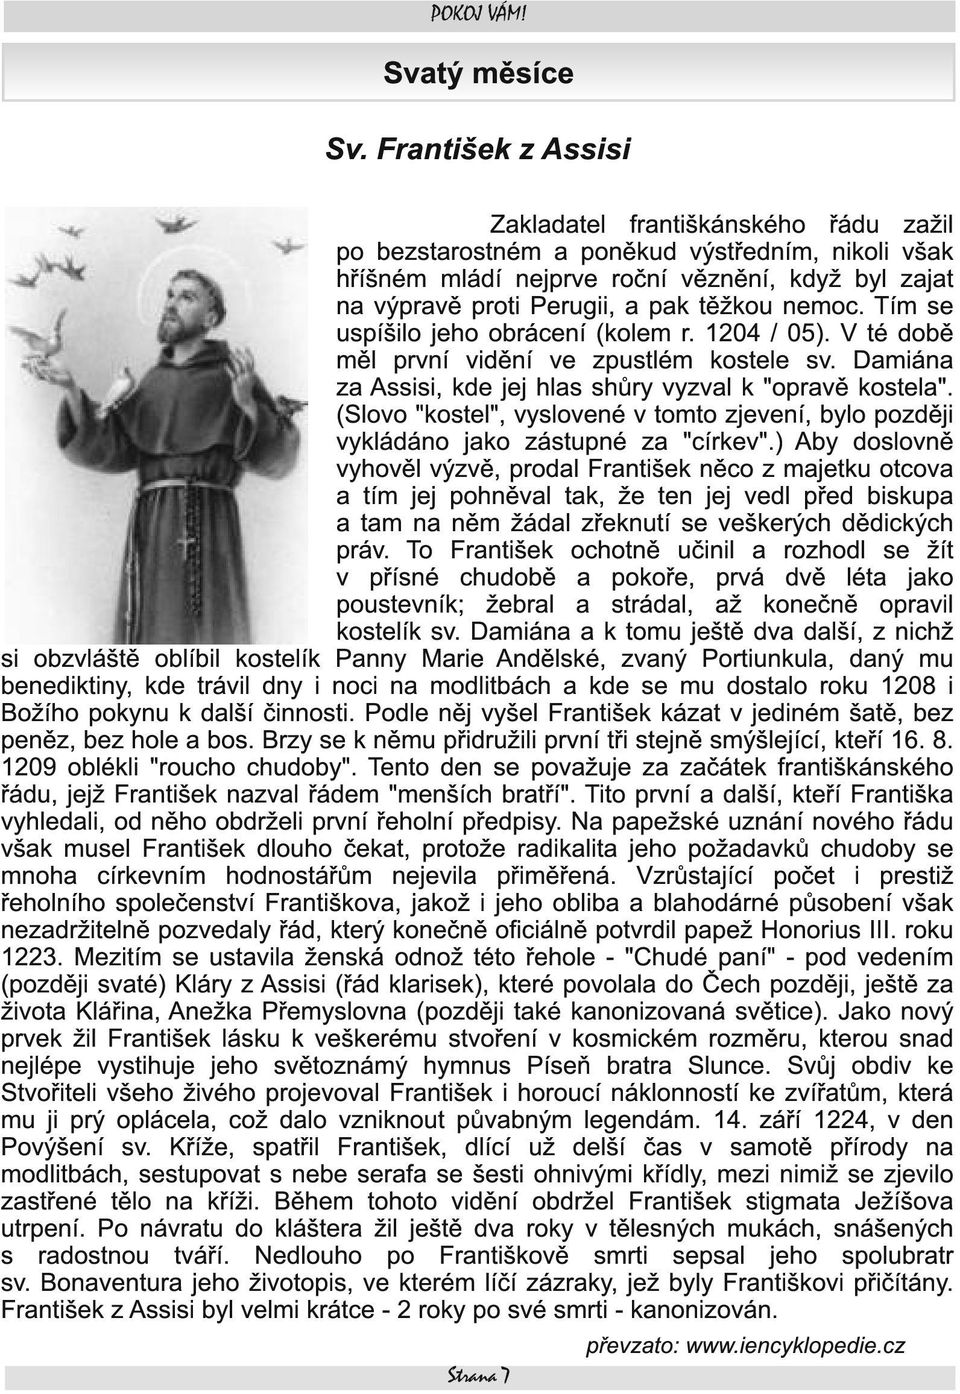 nemoc. Tím se uspíšilo jeho obrácení (kolem r. 1 204 / 05). V té době měl první vidění ve zpustlém kostele sv. Damiána za Assisi, kde jej hlas shůry vyzval k "opravě kostela".